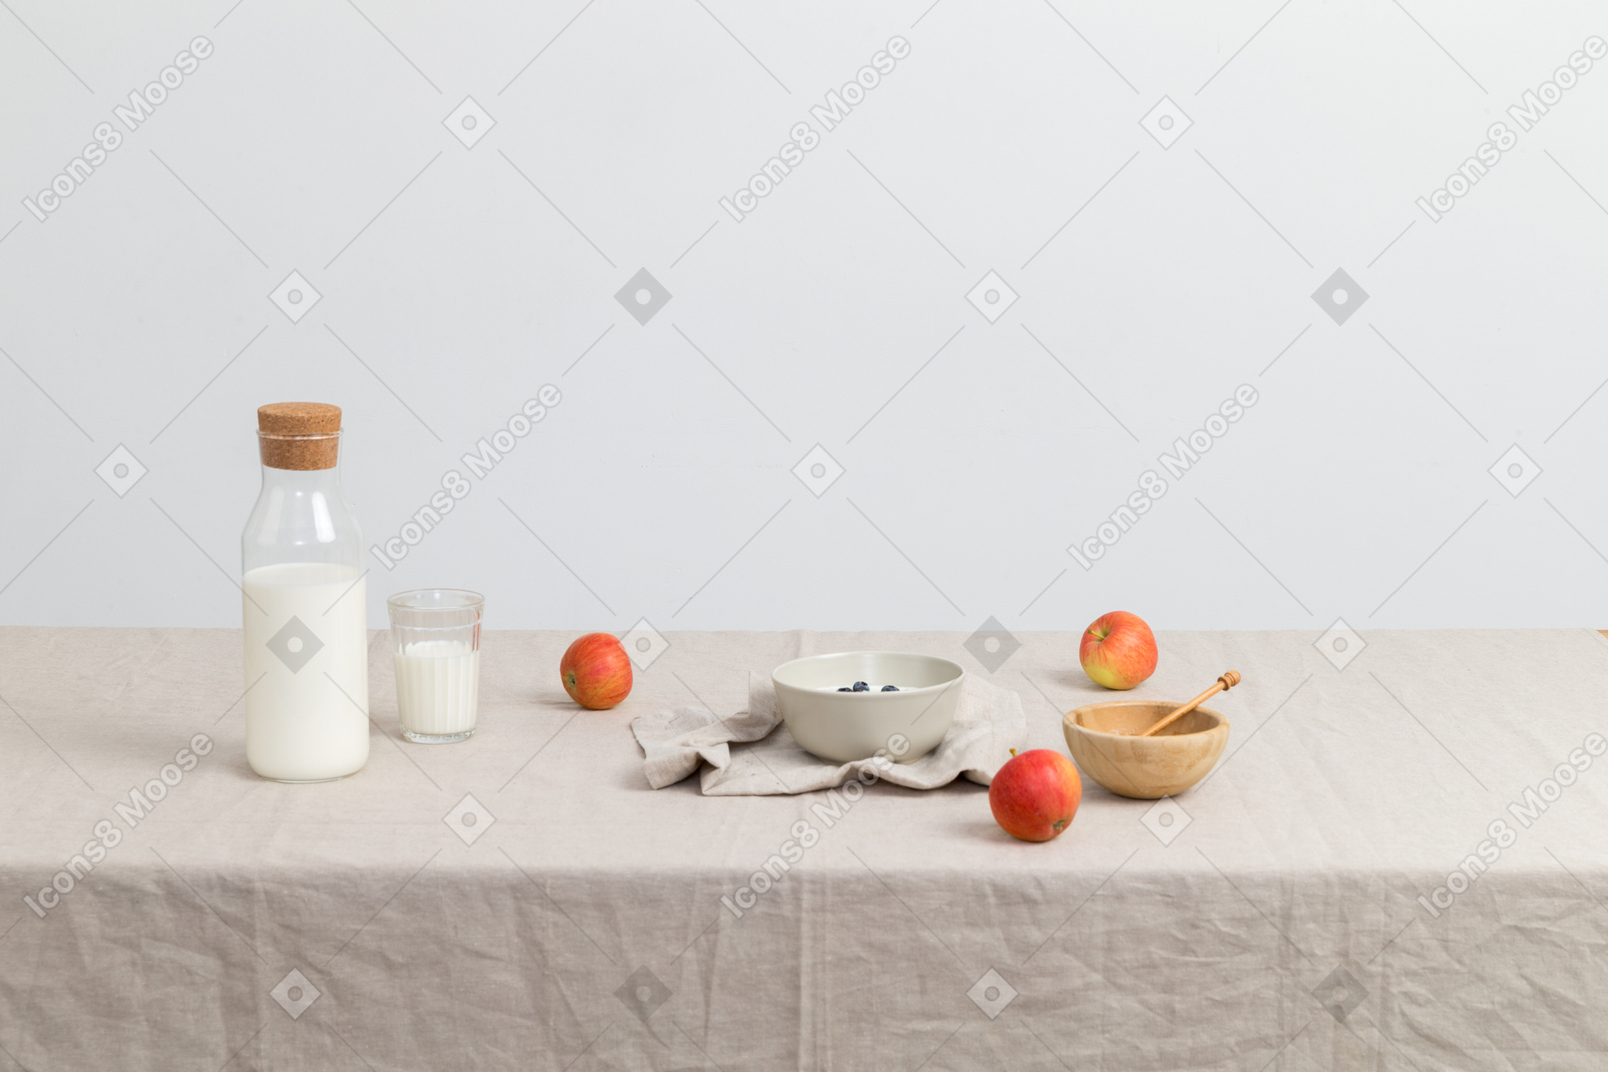 Bottle of milk, glass og milk, red apples and bowls